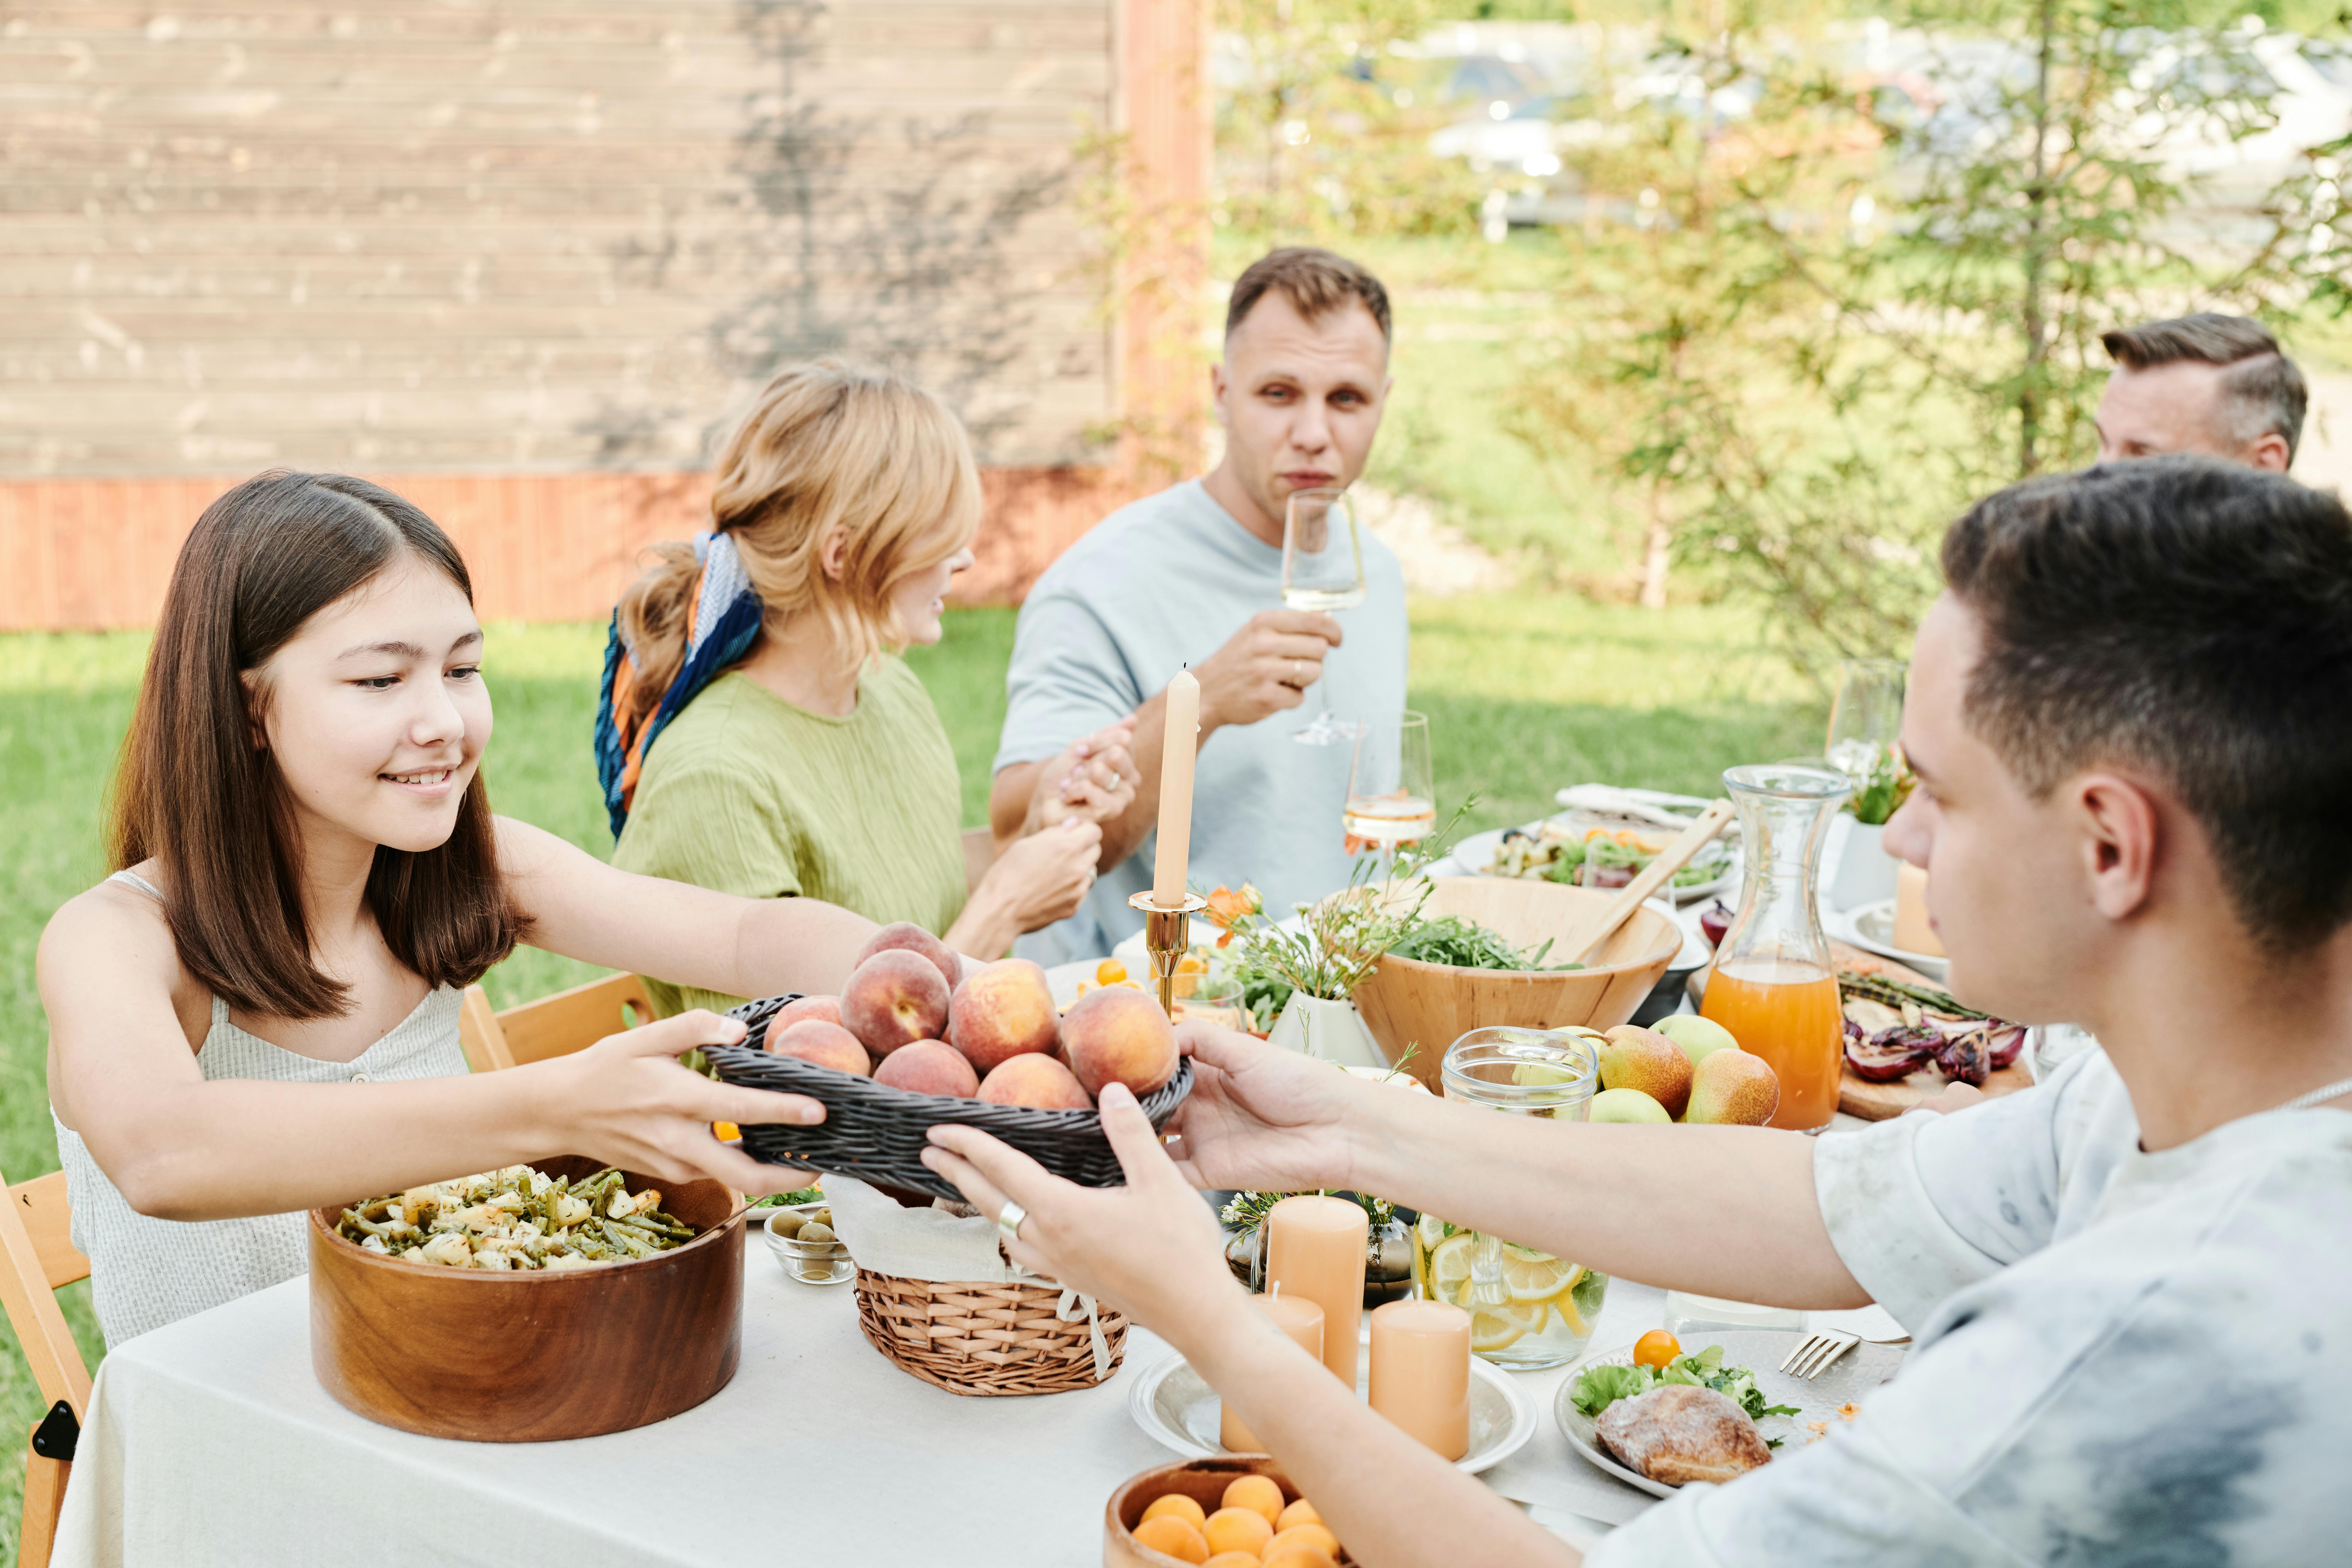 Une famille qui profite d'un repas ensemble | Source : Pexels